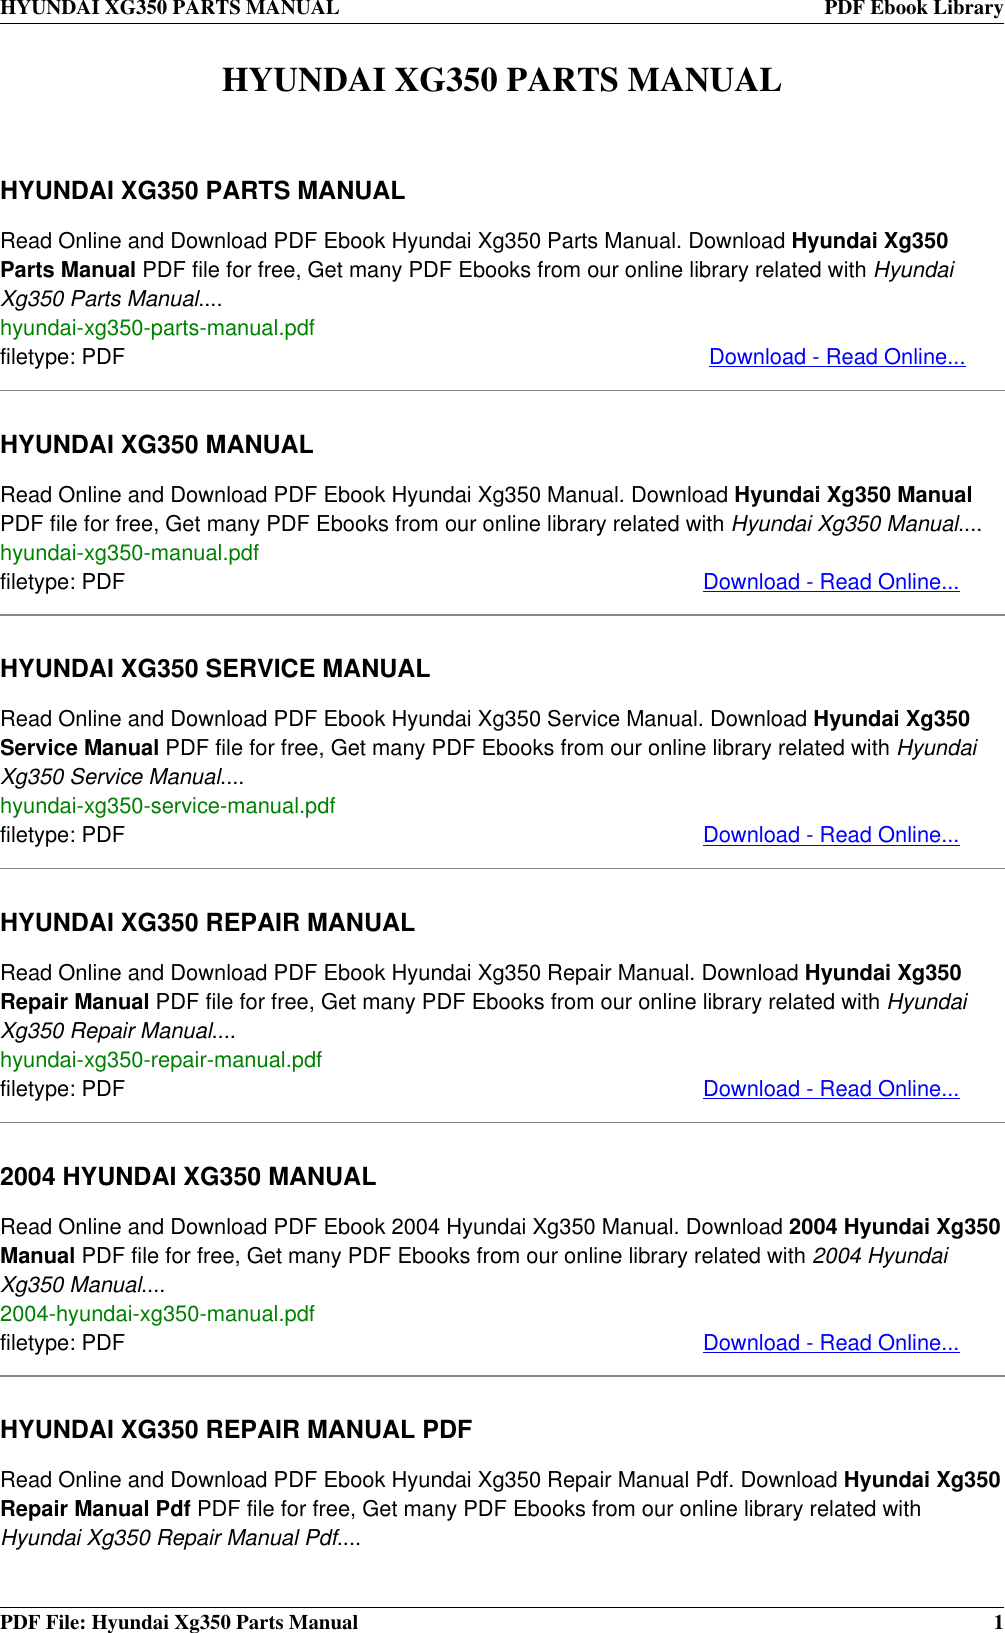 2004 hyundai xg350 owners manual pdf